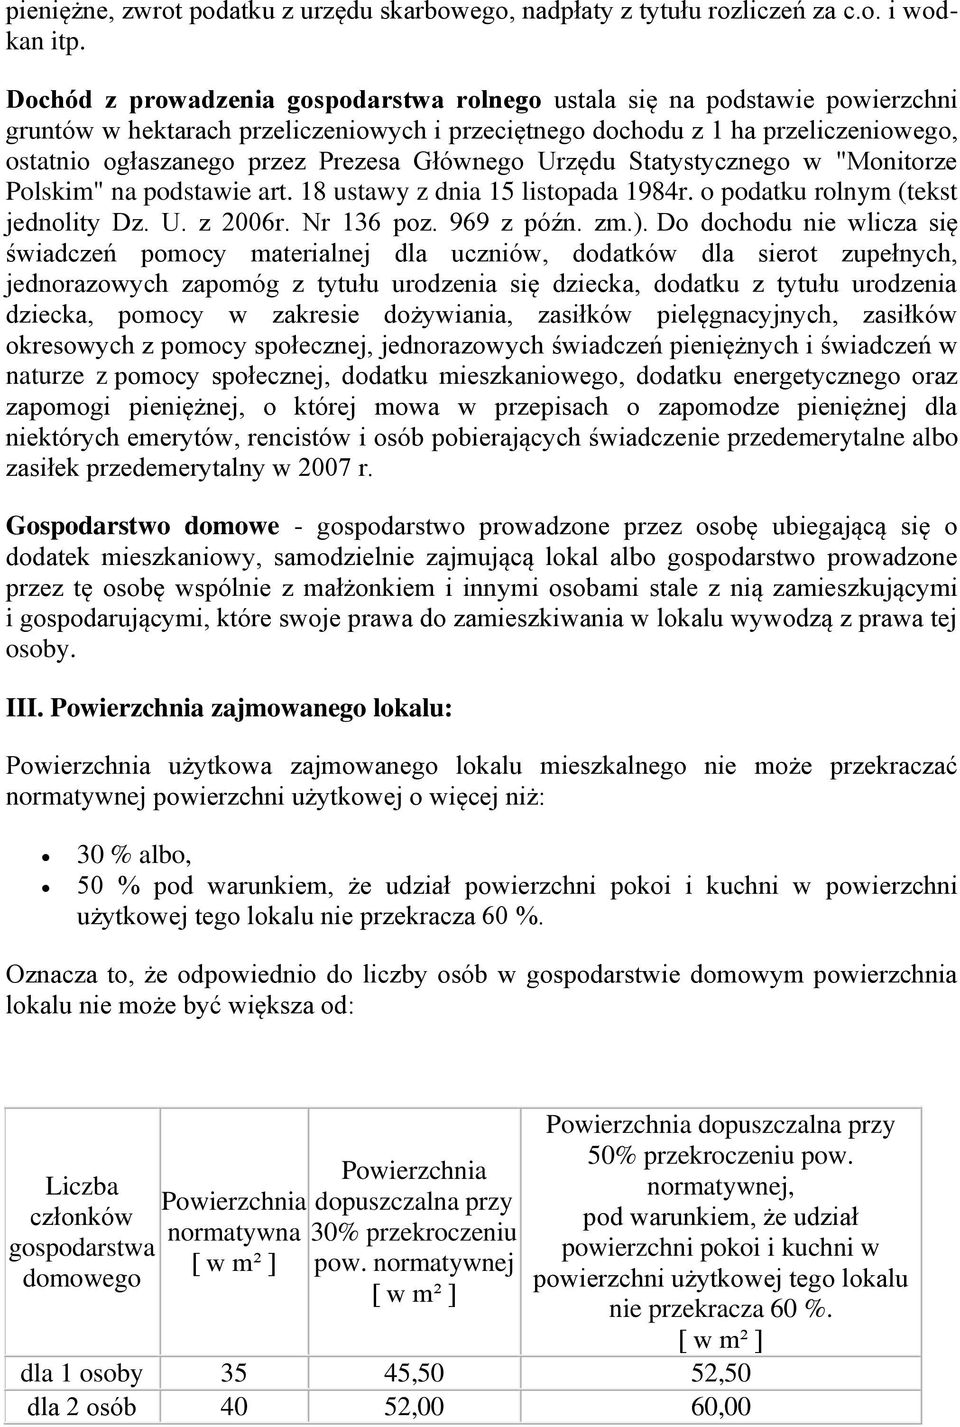 Głównego Urzędu Statystycznego w "Monitorze Polskim" na podstawie art. 18 ustawy z dnia 15 listopada 1984r. o podatku rolnym (tekst jednolity Dz. U. z 2006r. Nr 136 poz. 969 z późn. zm.).